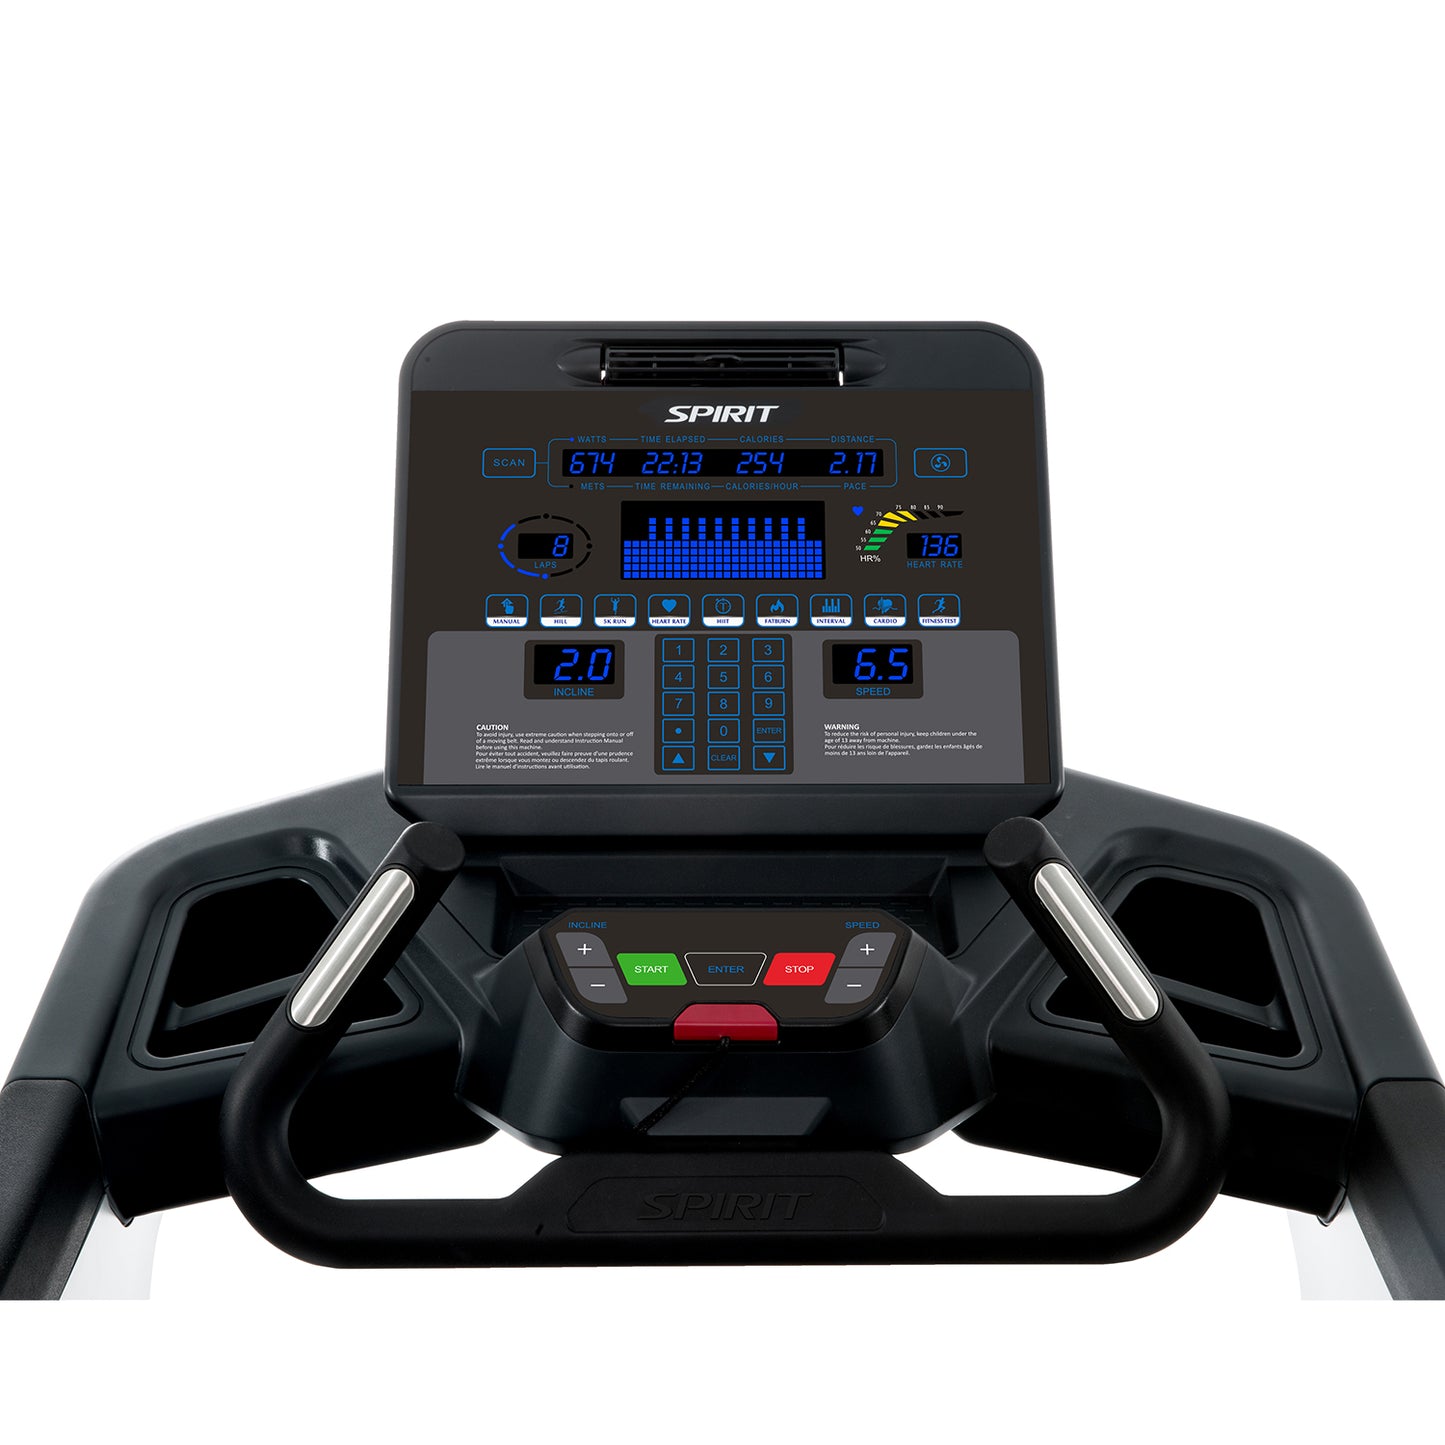 Spirit CT900 Full Commercial Treadmill